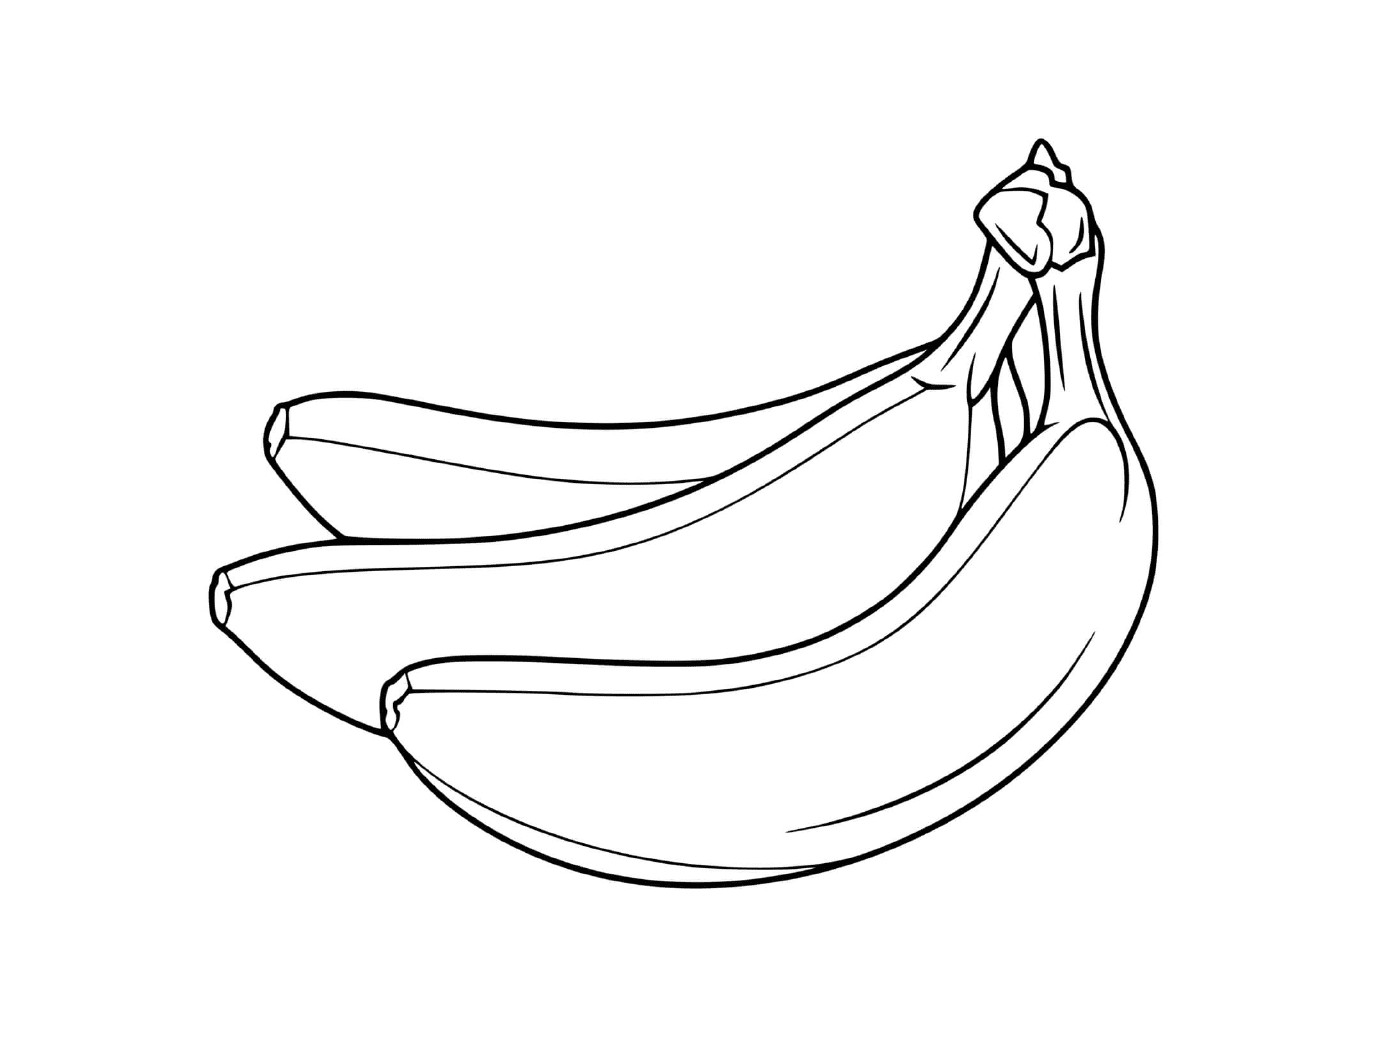  白色背景的两根香蕉 